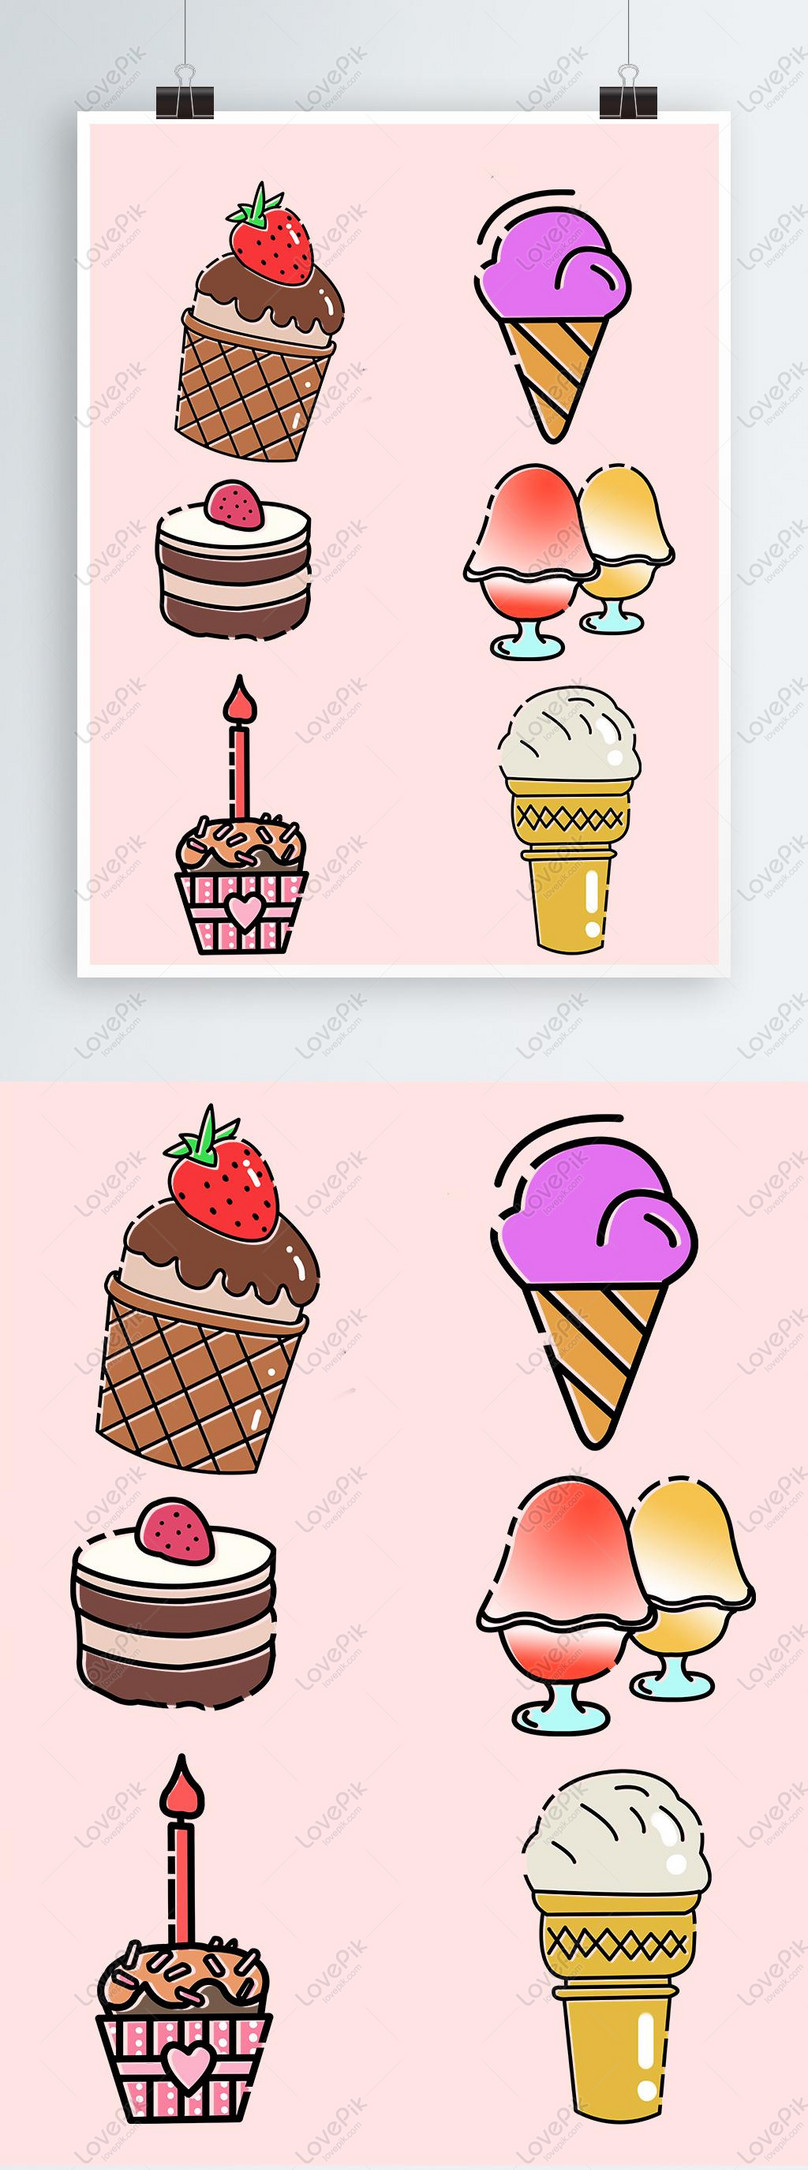 Bạn là fan của những cây kem dễ thương? Hãy xem ngay những hình vẽ cây kem đáng yêu mà chúng tôi đã thu thập từ khắp nơi. Chúng tôi chắc chắn bạn sẽ không khỏi ngạc nhiên với độ tinh xảo và đáng yêu của chúng.